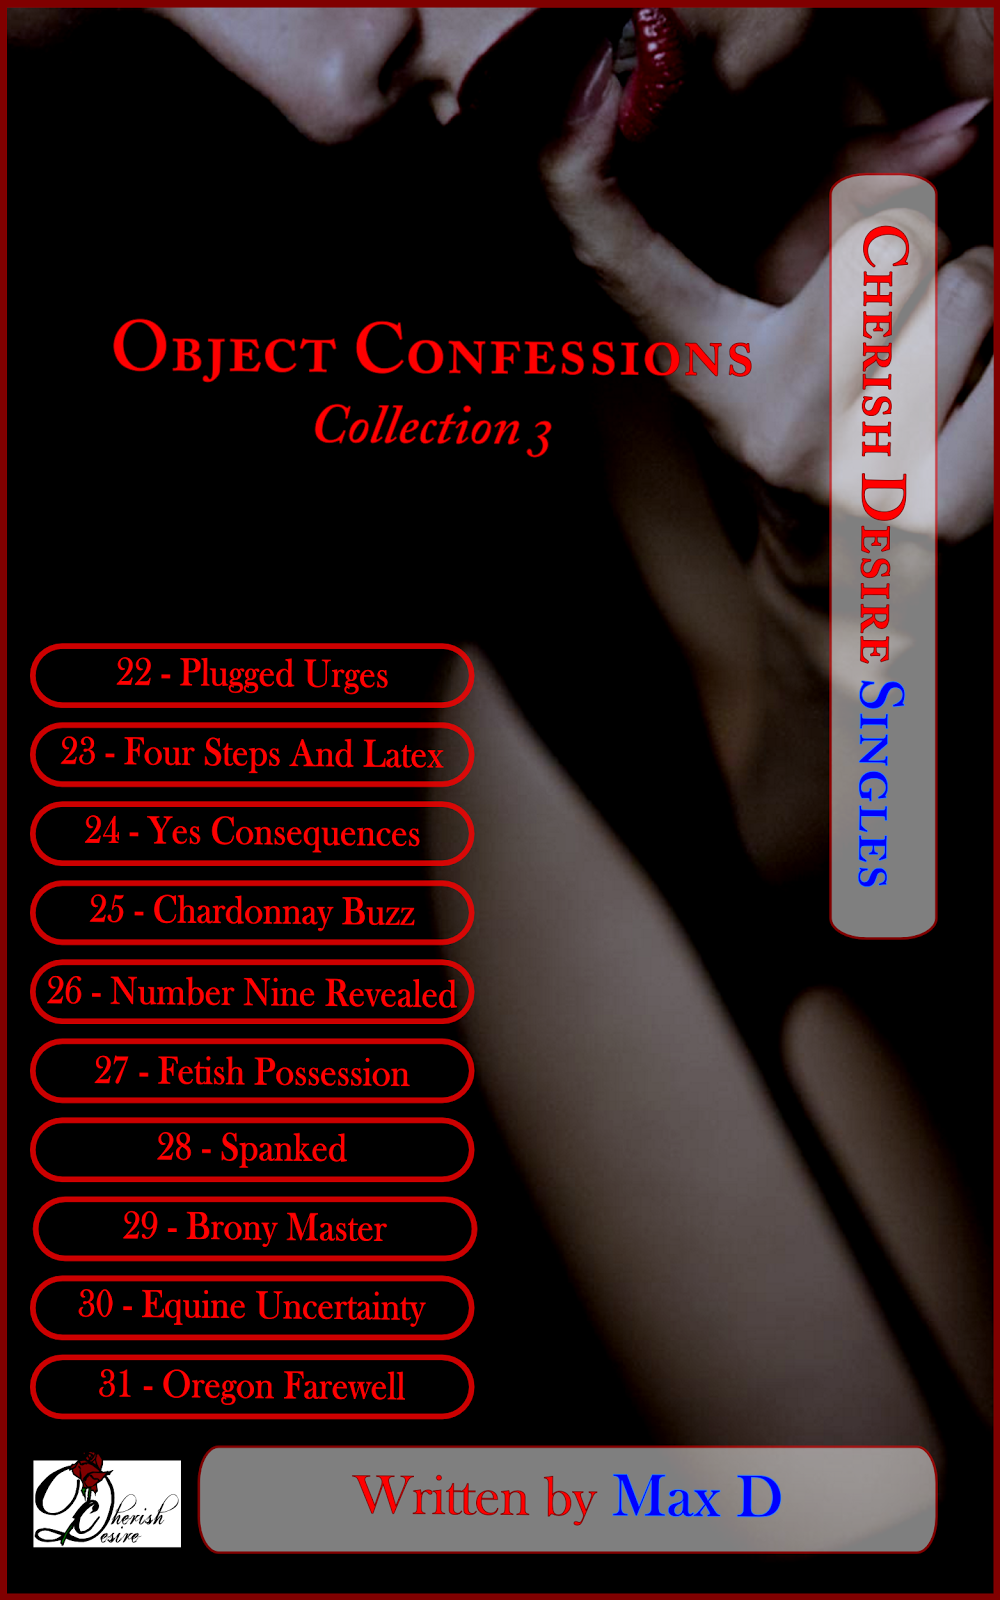 Cherish Desire Singles: Object Confessions Collection 3, Max D, erotica